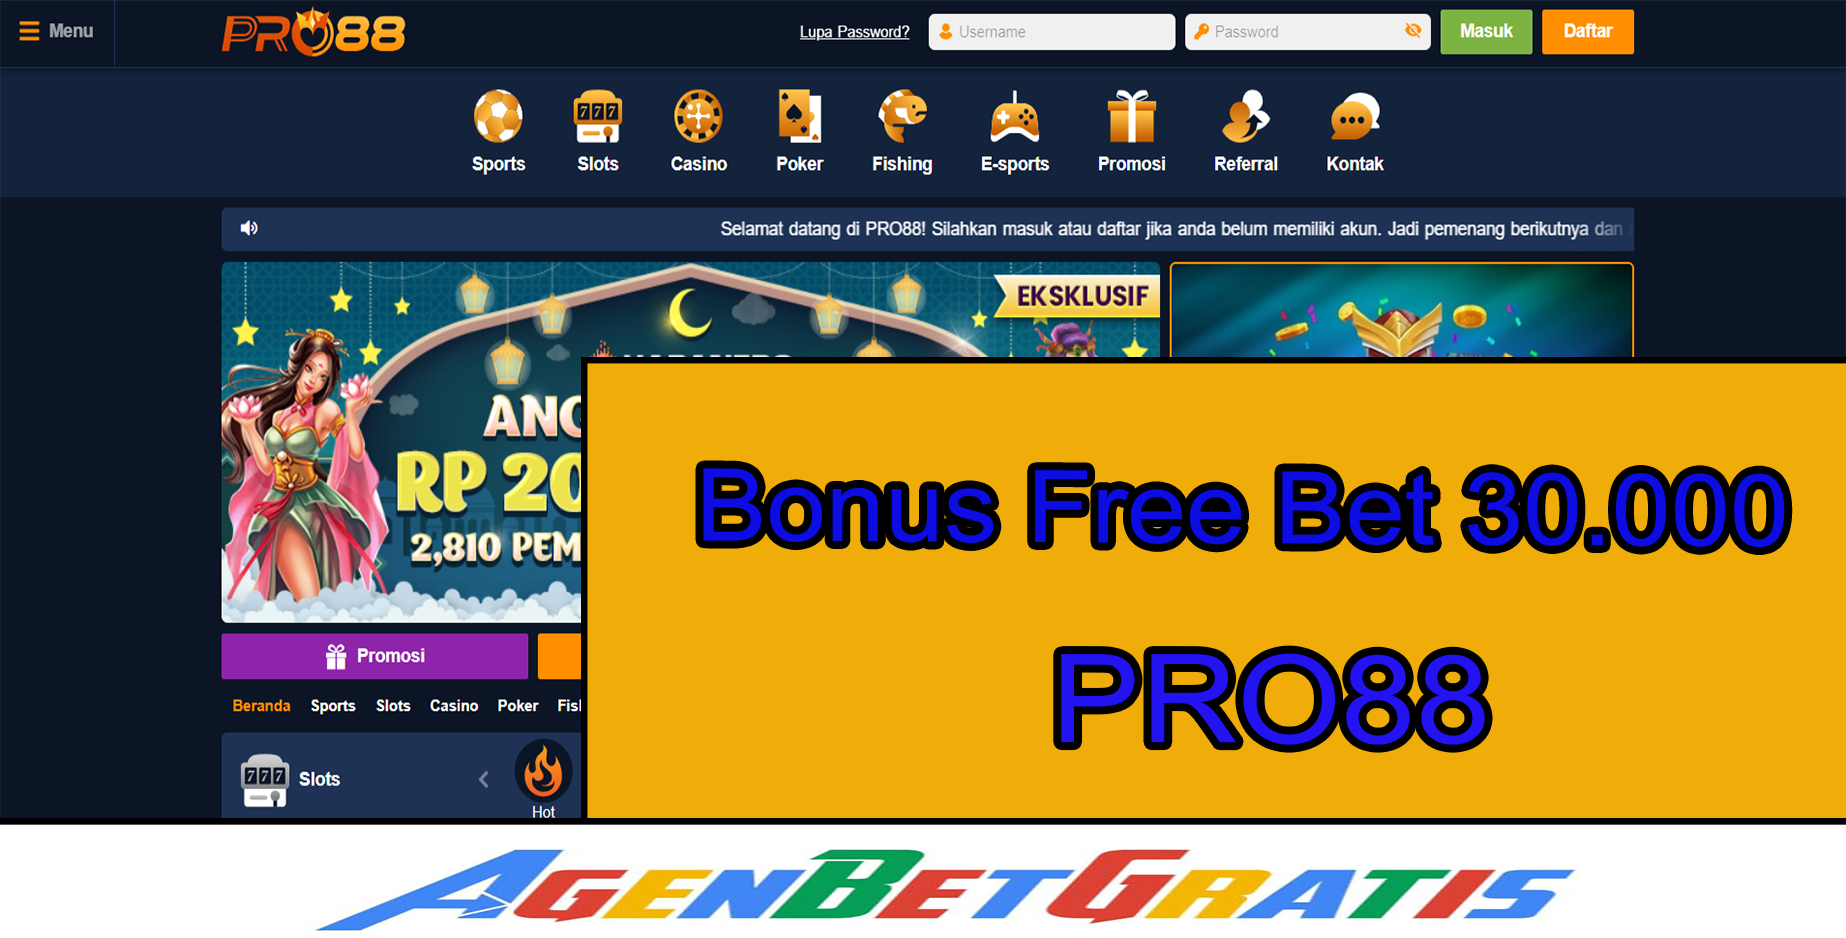 PRO88 - Bonus FreeBet 30.000